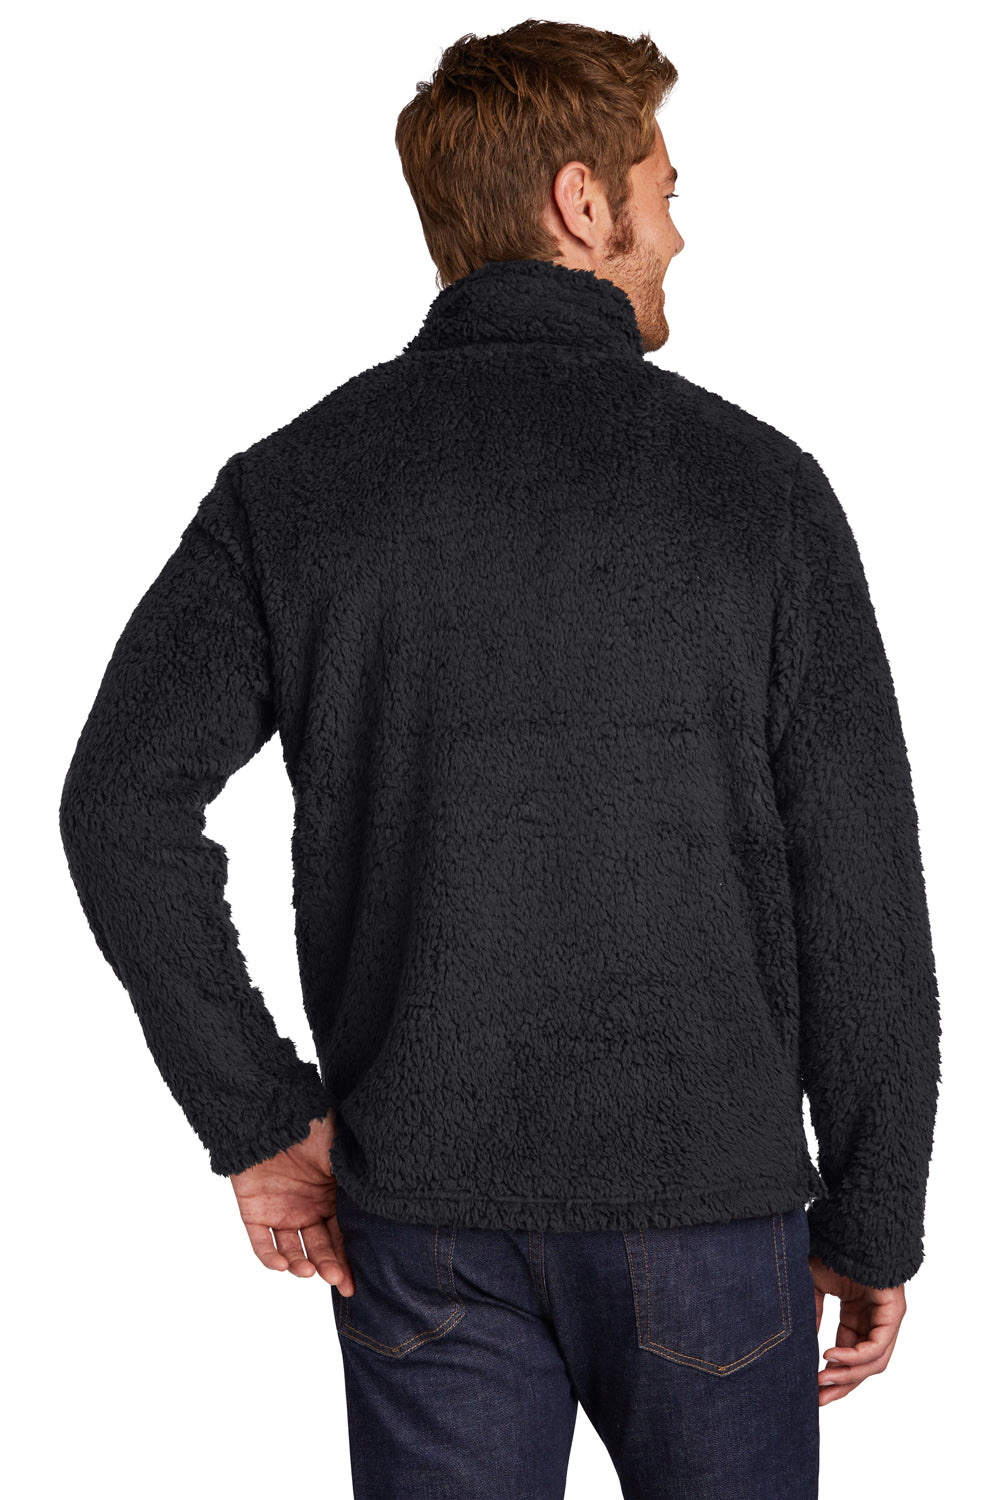 Port Authority Mens Cozy 1/4 Zip Fleece Jacket Charcoal Grey Side